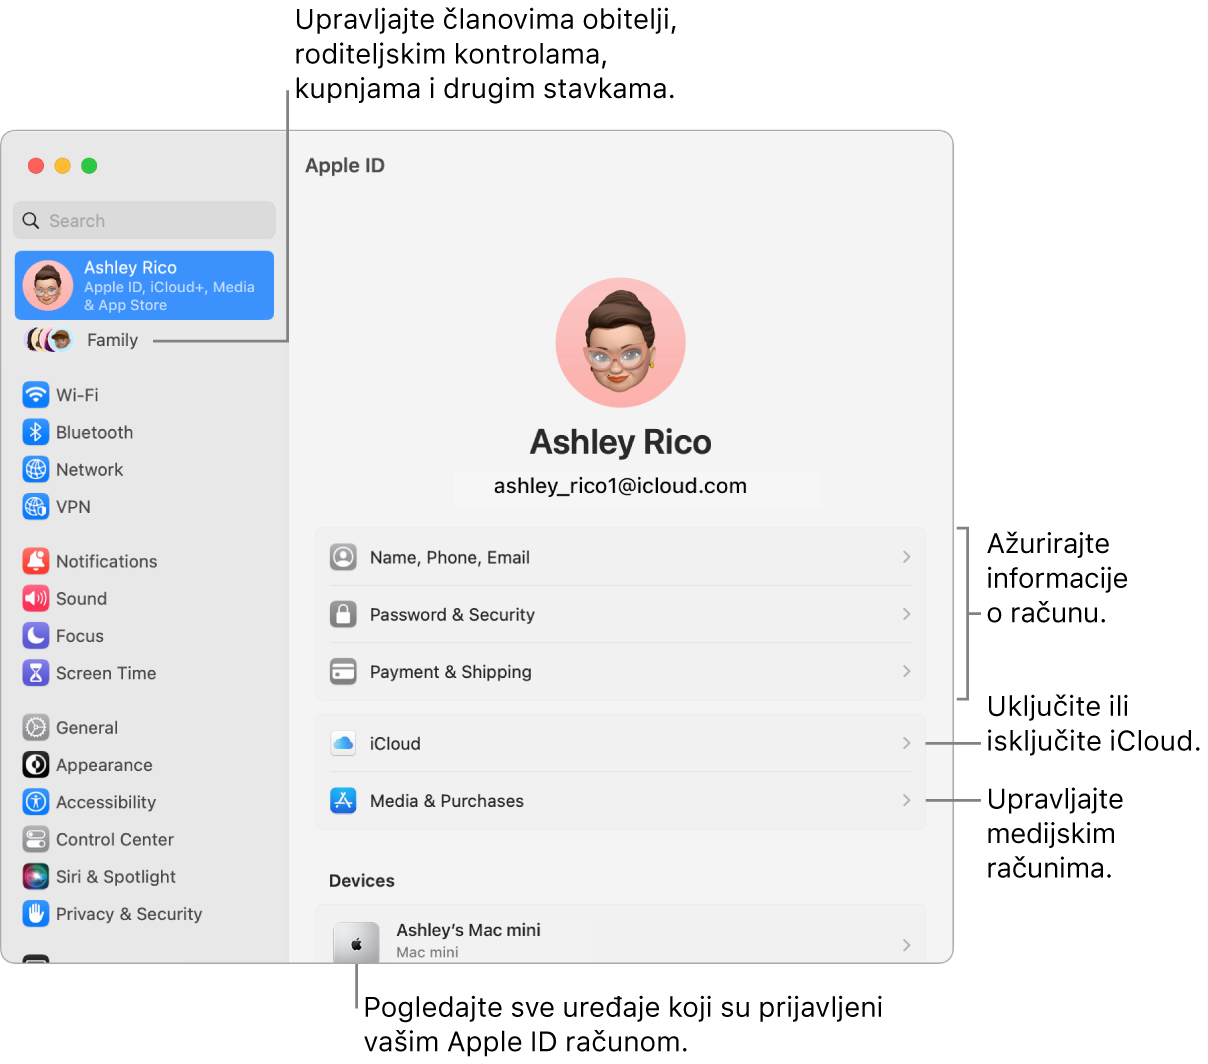 Postavke Apple ID-ja u Postavkama sustava s oblačićima za ažuriranje informacija o računu, uključivanje ili isključivanje značajki iClouda, upravljanje medijskim računima i Obitelji, gdje možete upravljati članovima obitelji, roditeljskim kontrolama, kupnjama i ostalim.